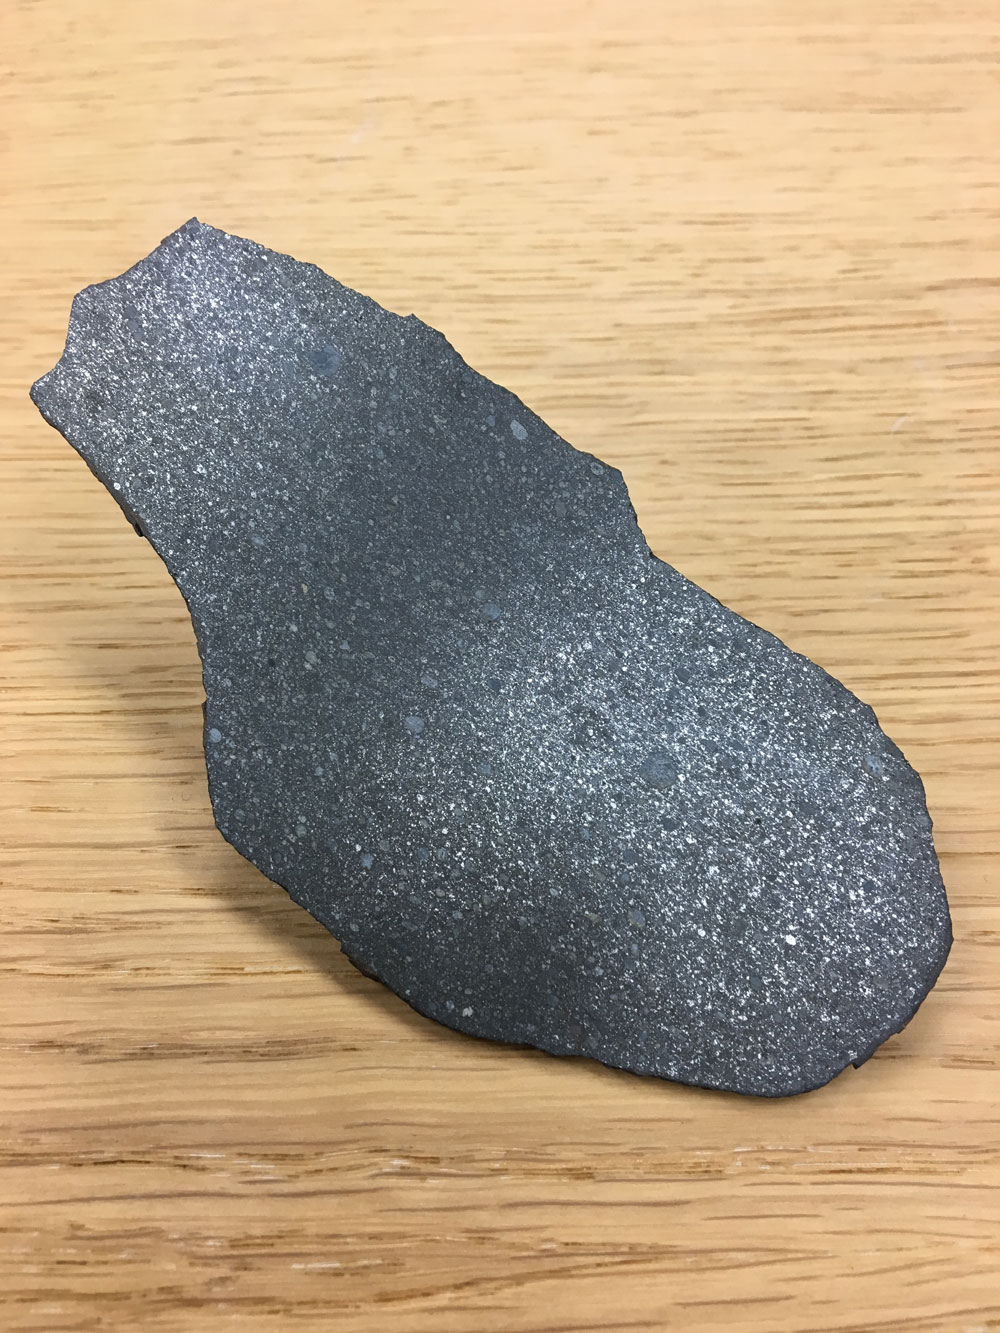 エンスタタイト・コンドライト隕石であるSahara 97096。